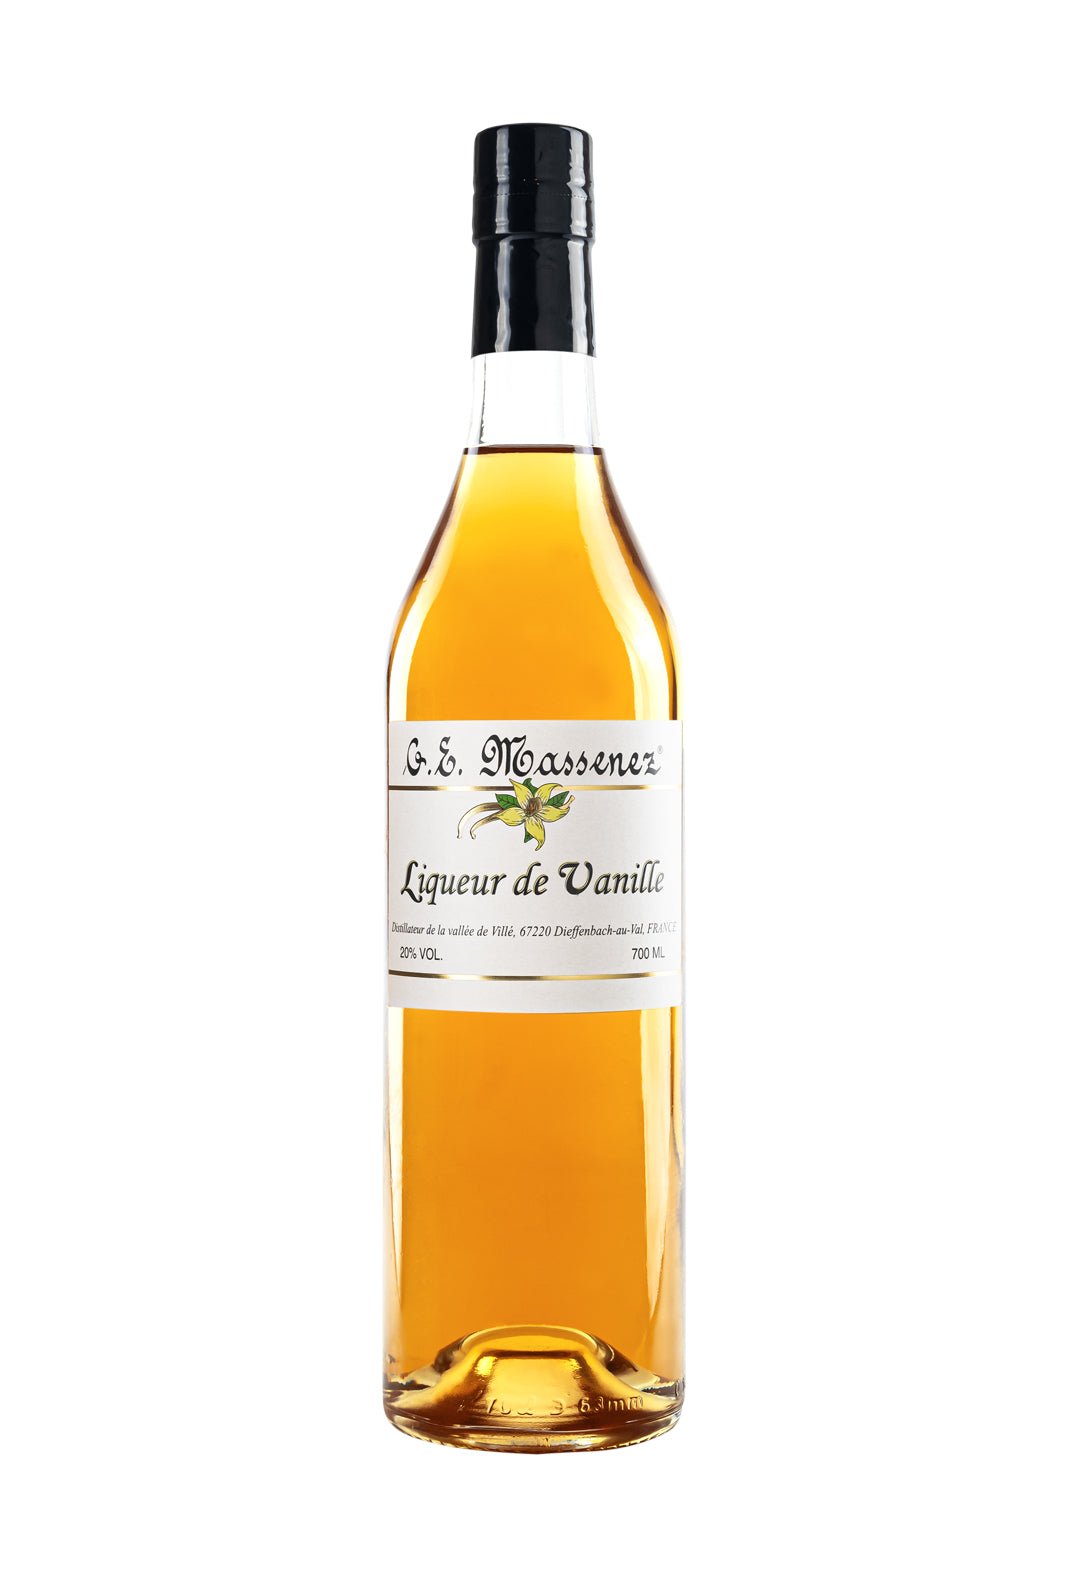 Massenez Vanilla Liqueur 20% 700ml | Liqueurs | Shop online at Spirits of France